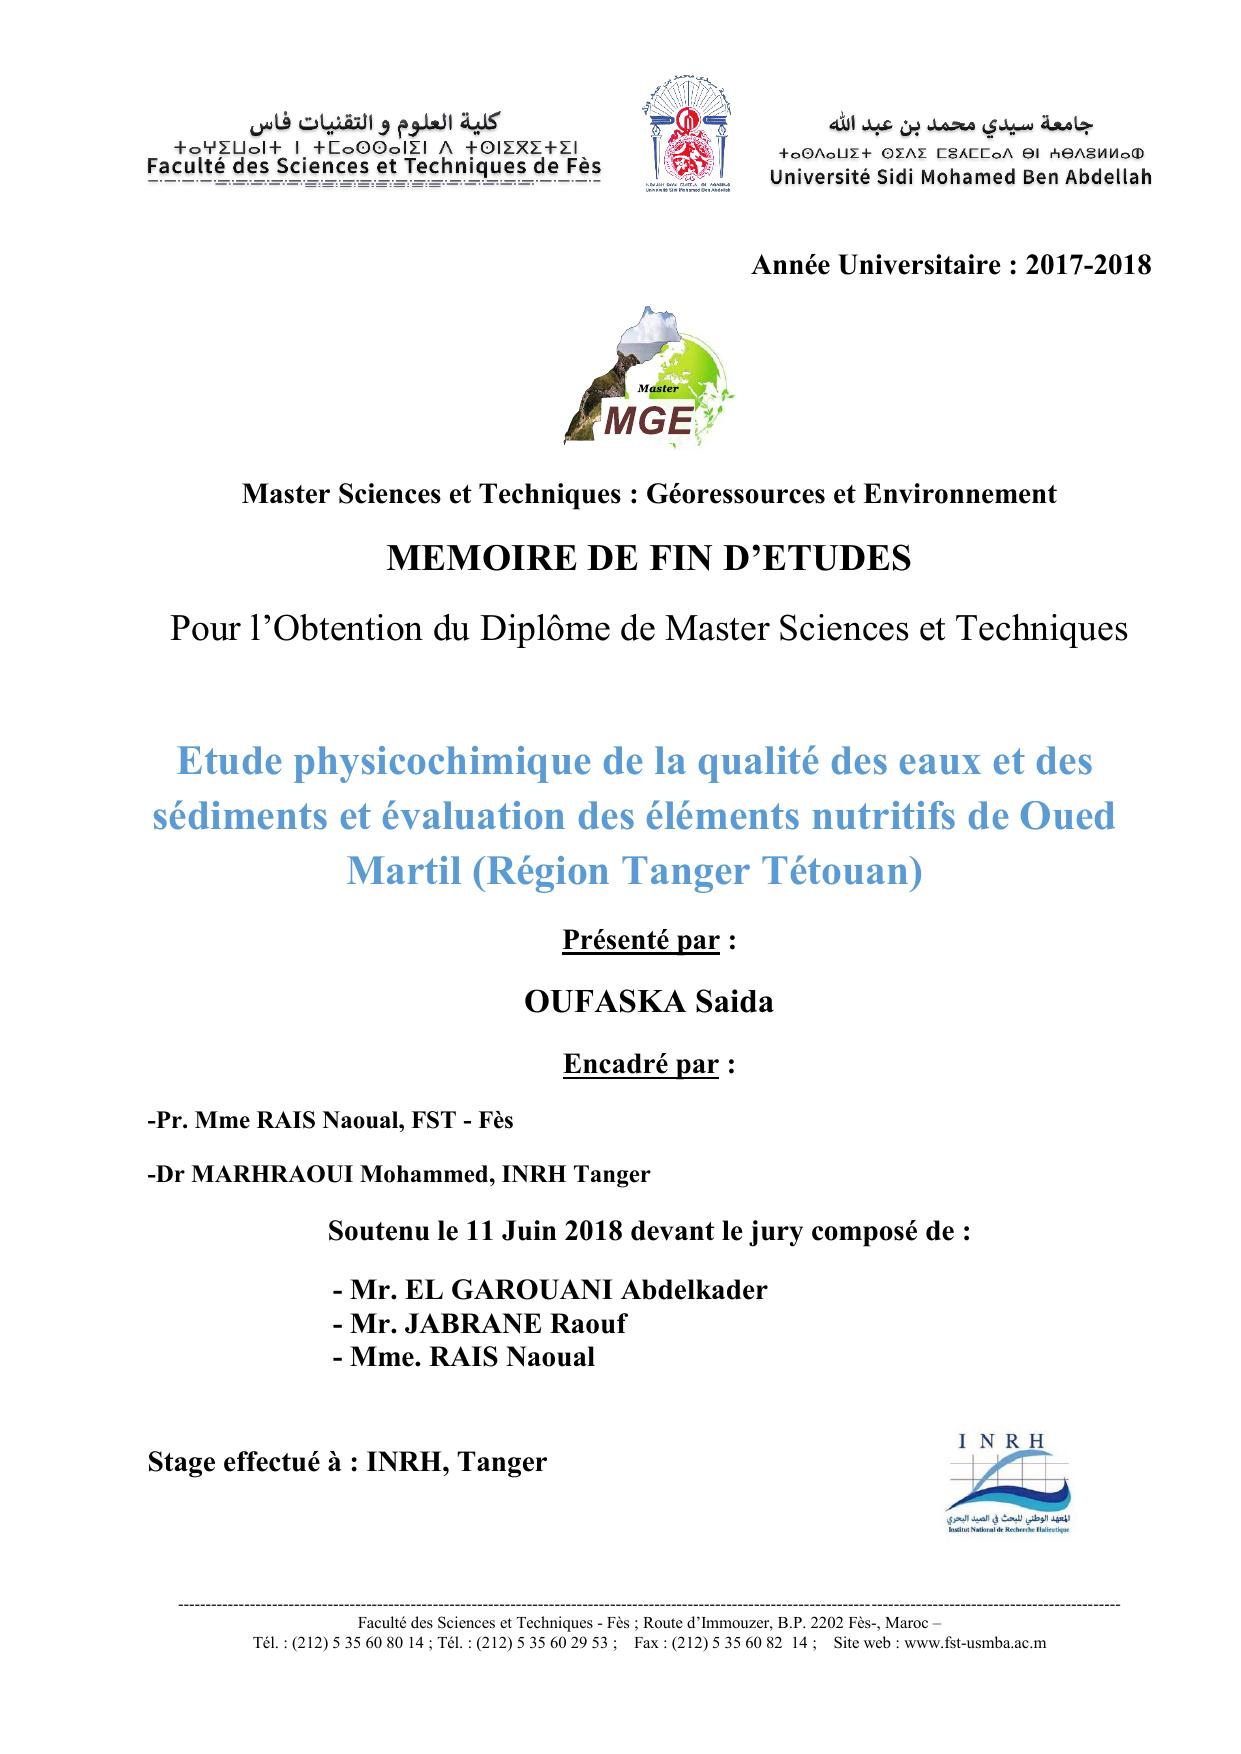 Etude physicochimique de la qualité des eaux et des sédiments et évaluation des éléments nutritifs de Oued Martil (Région Tanger Tétouan)